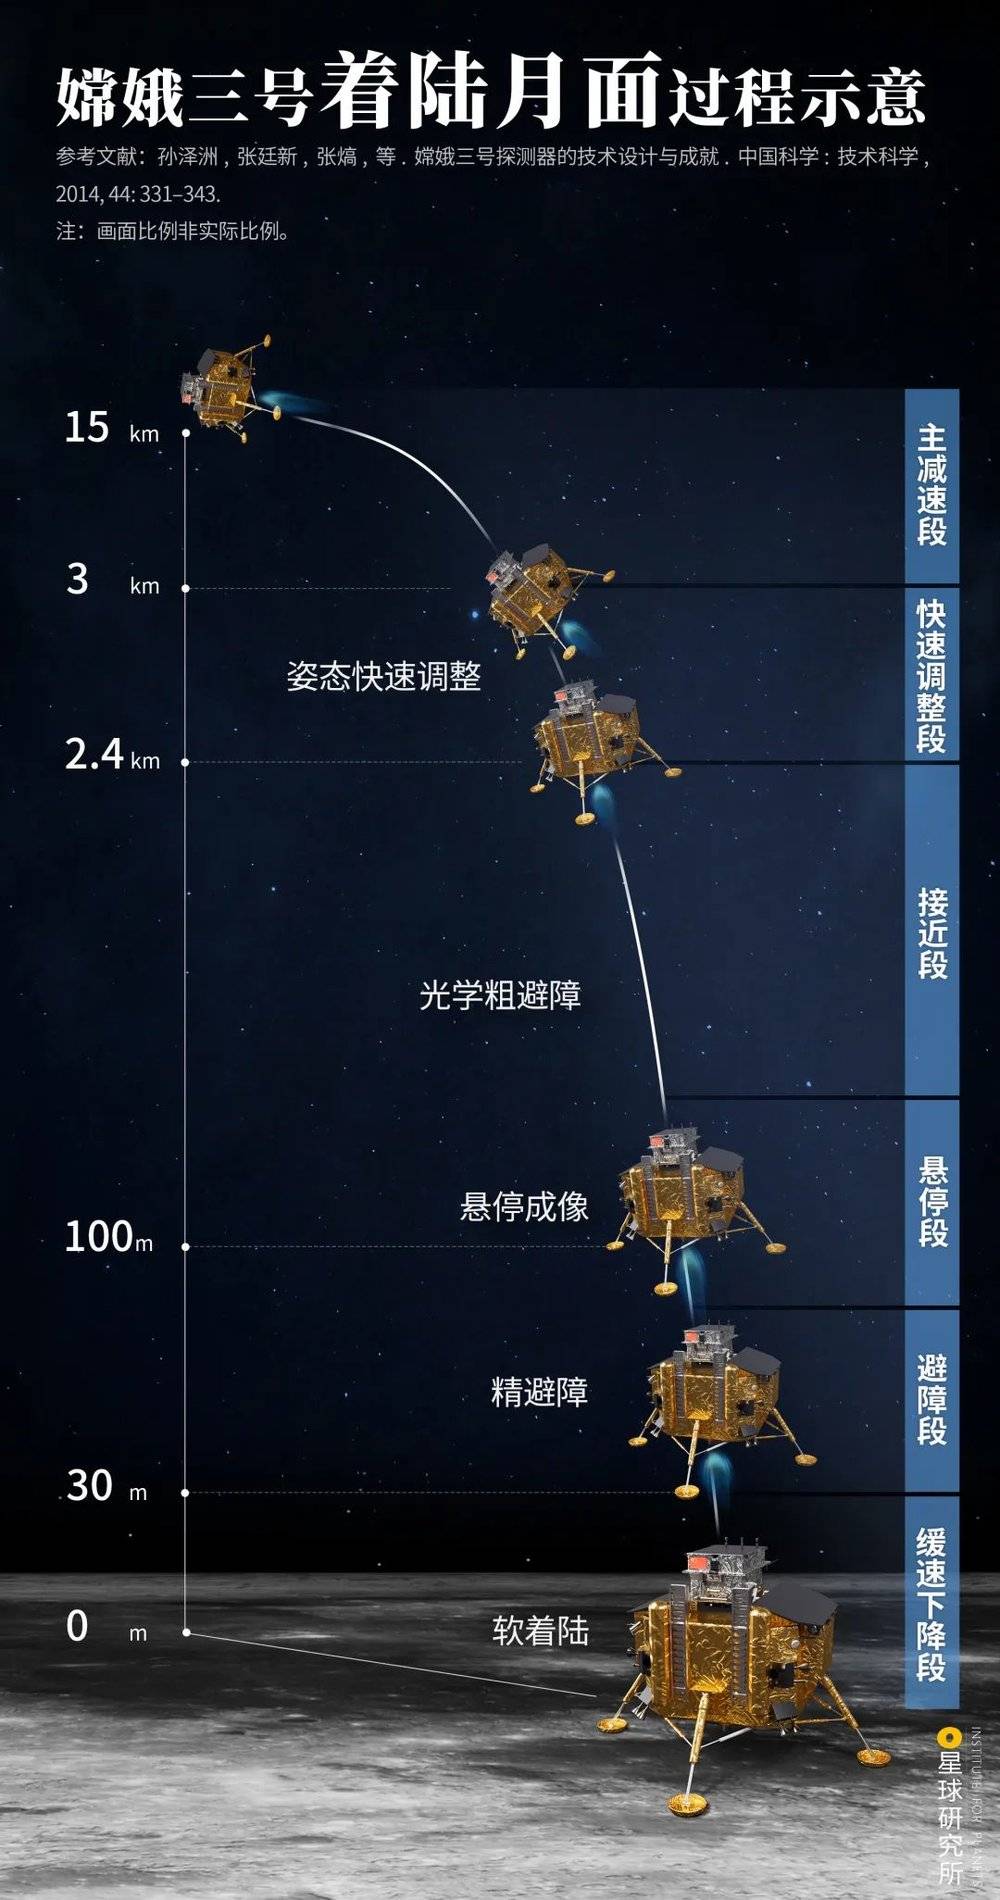 （嫦娥三号着陆月面过程示意，制图@刘志鹏&李炎/星球研究所）